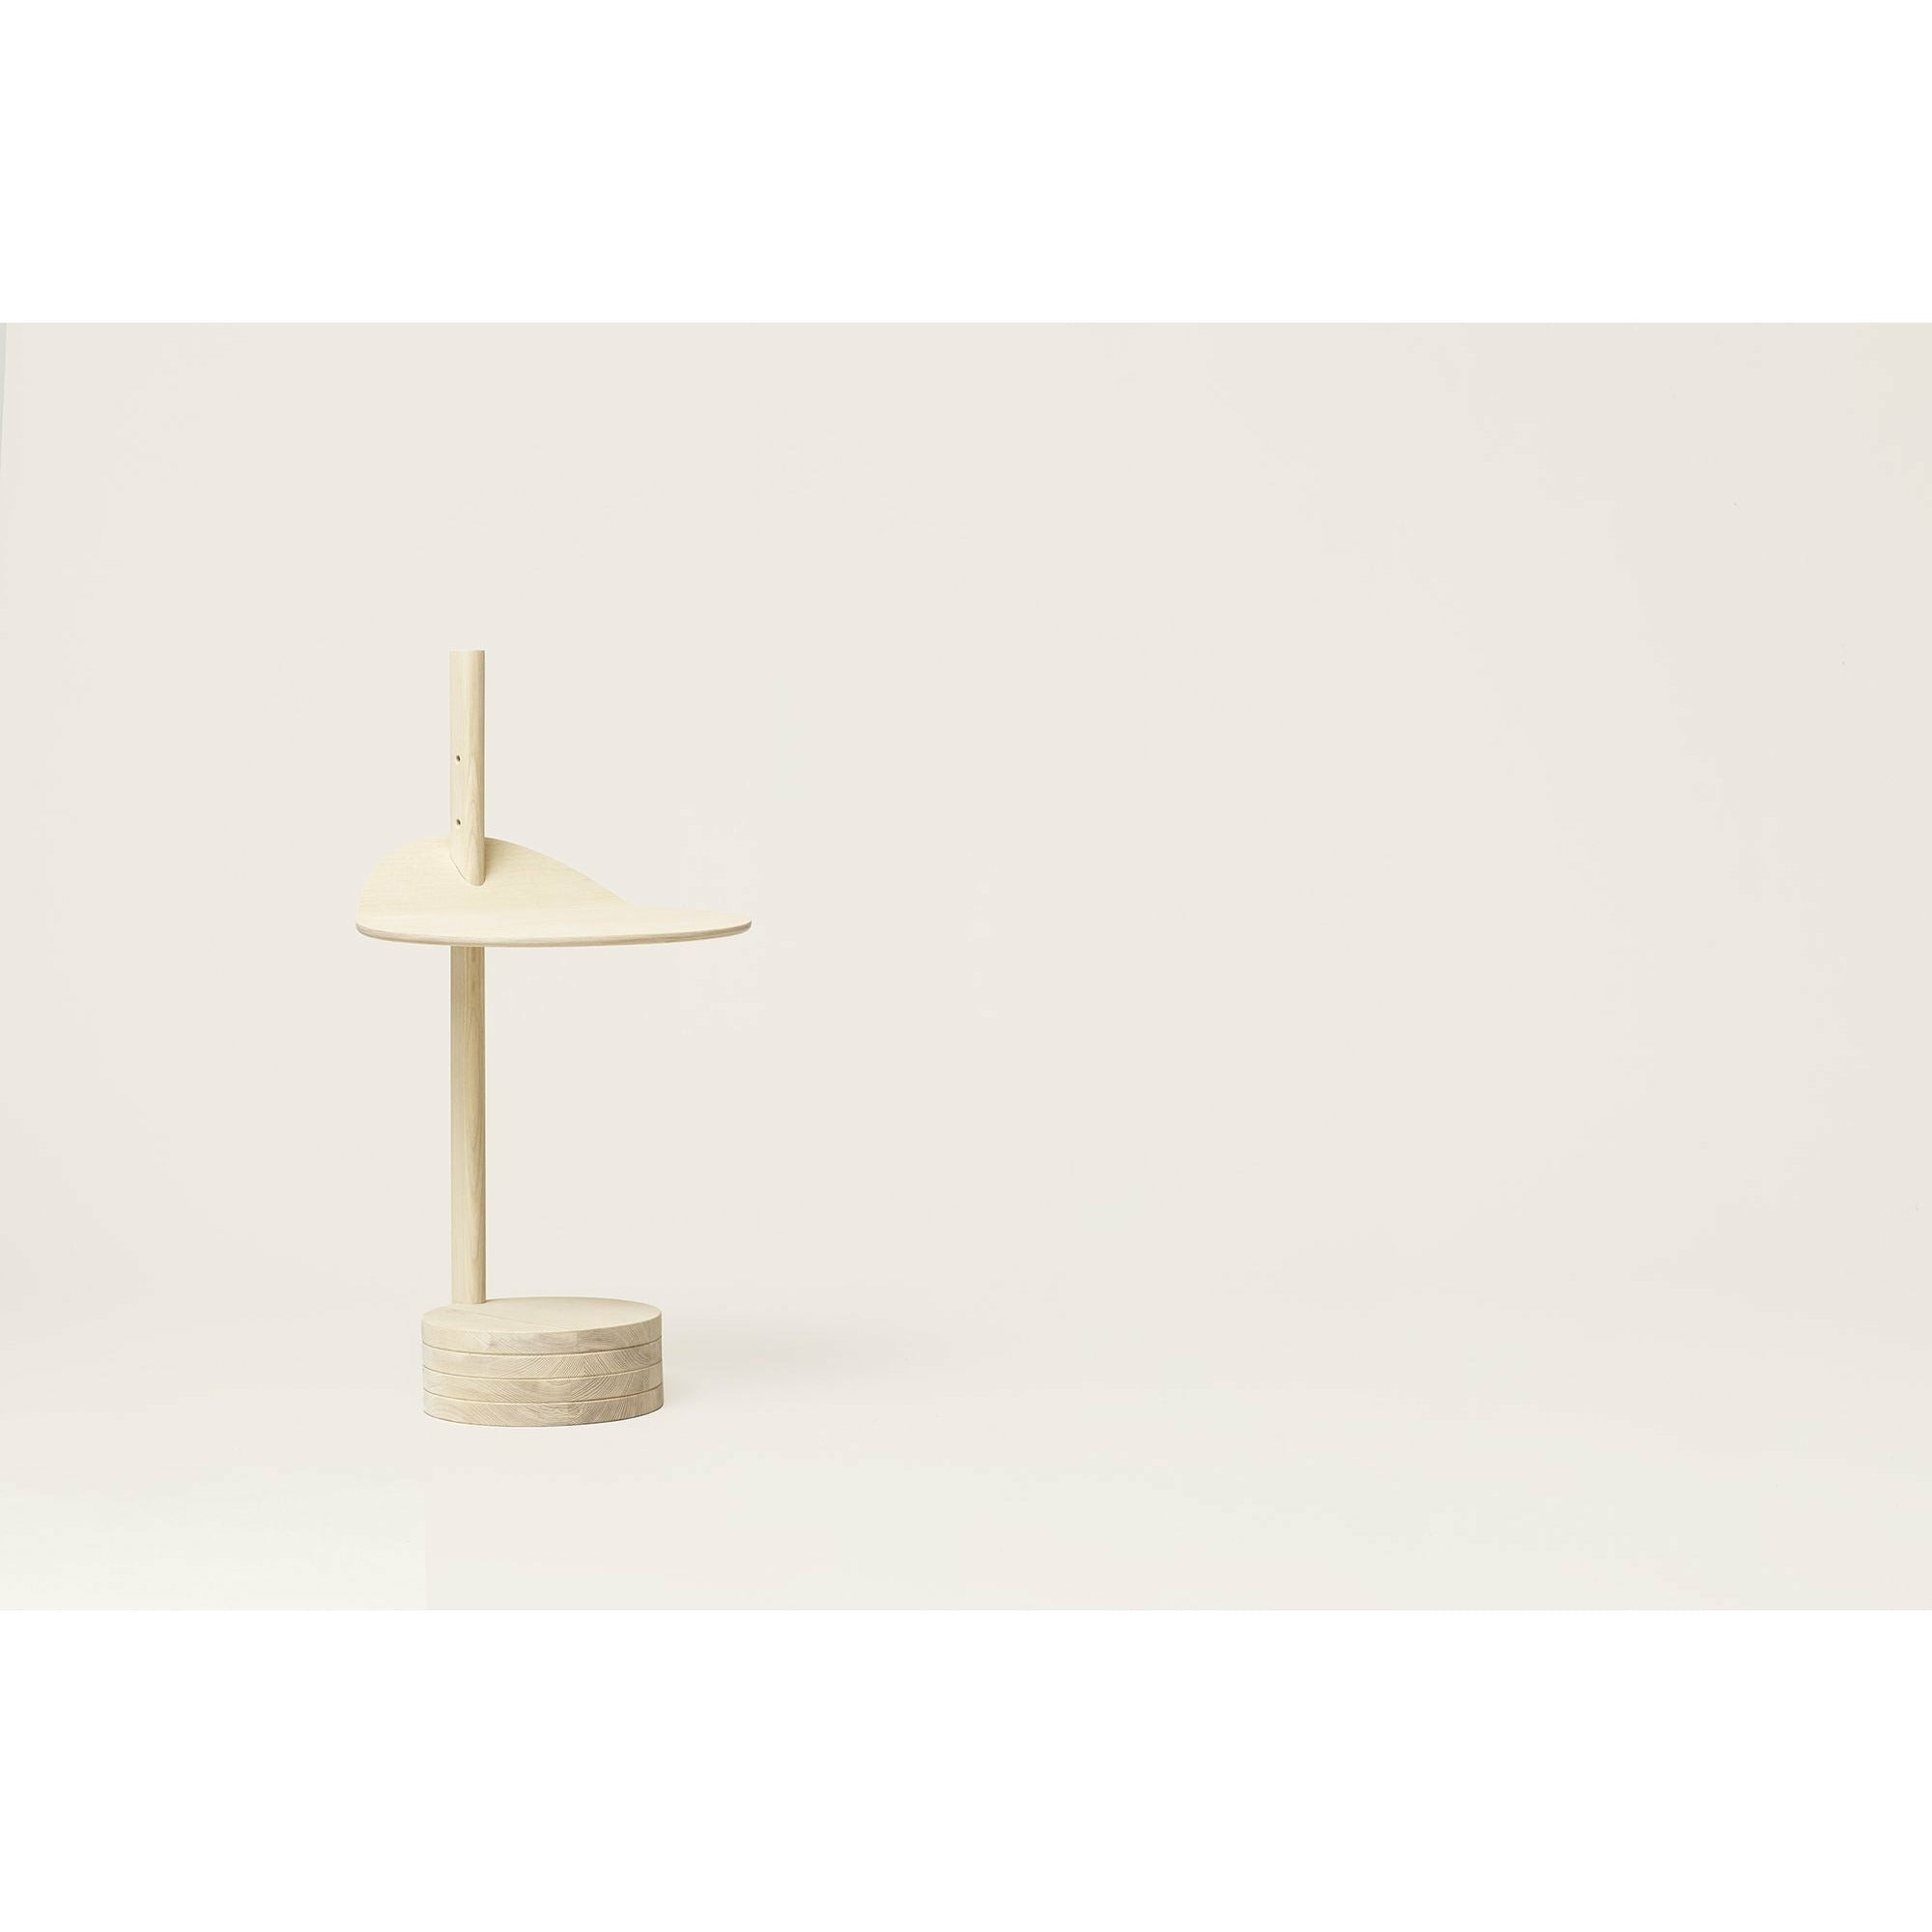 Form & Refine Stilk Boczny stół. Popiół